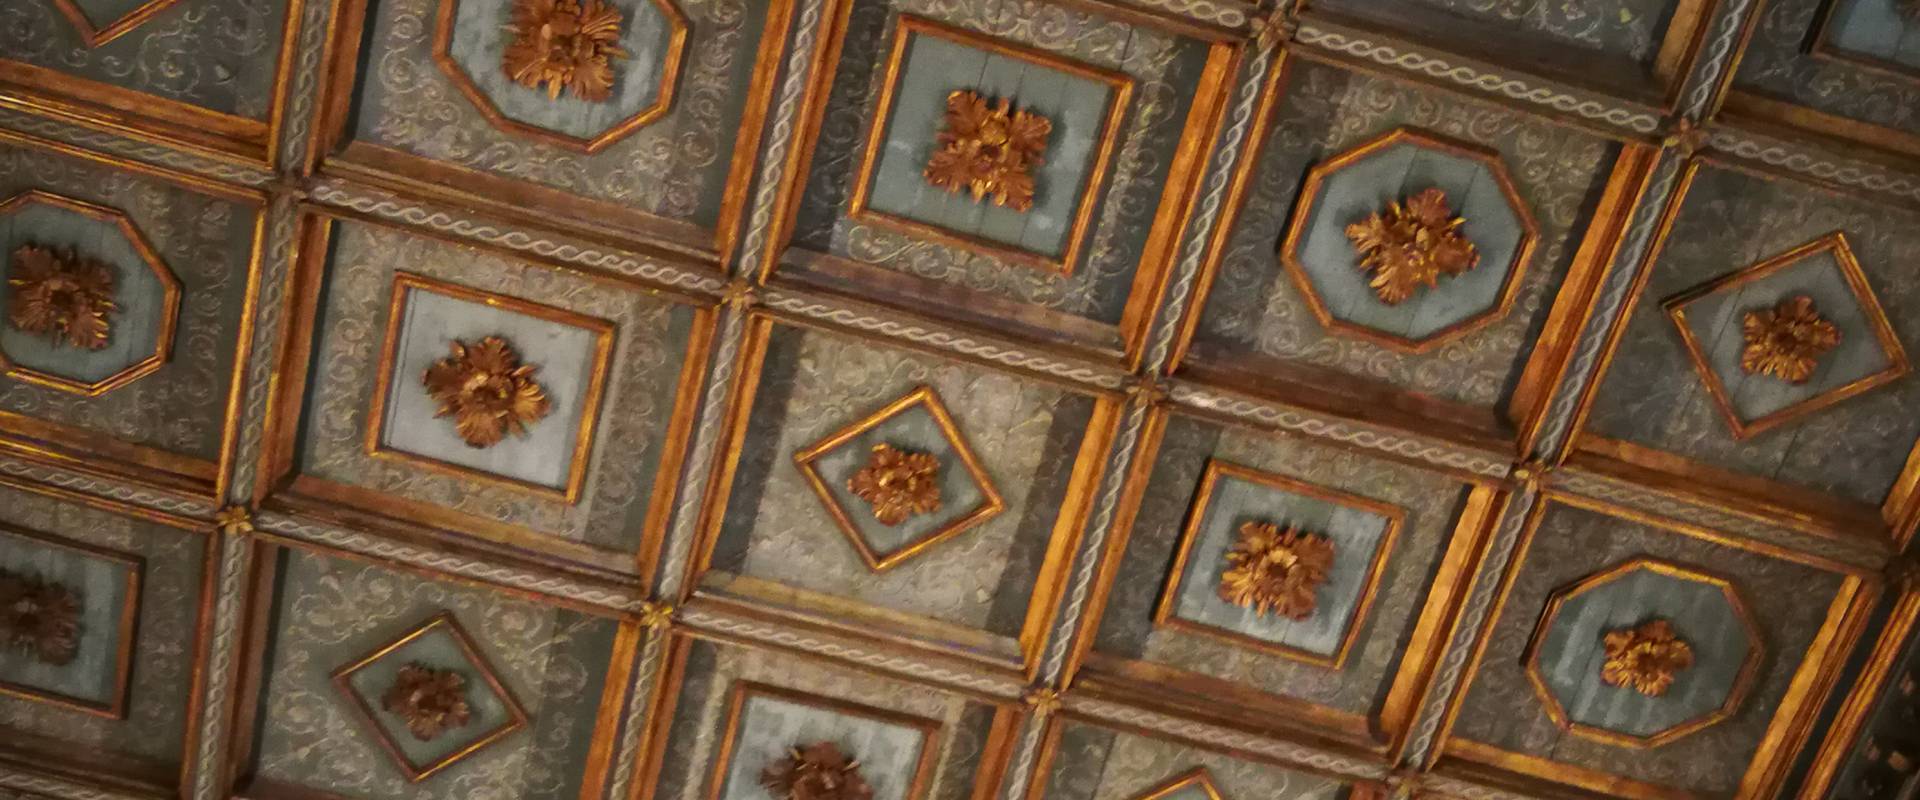 Sant'Apollinare Nuovo - soffitto foto di LadyBathory1974